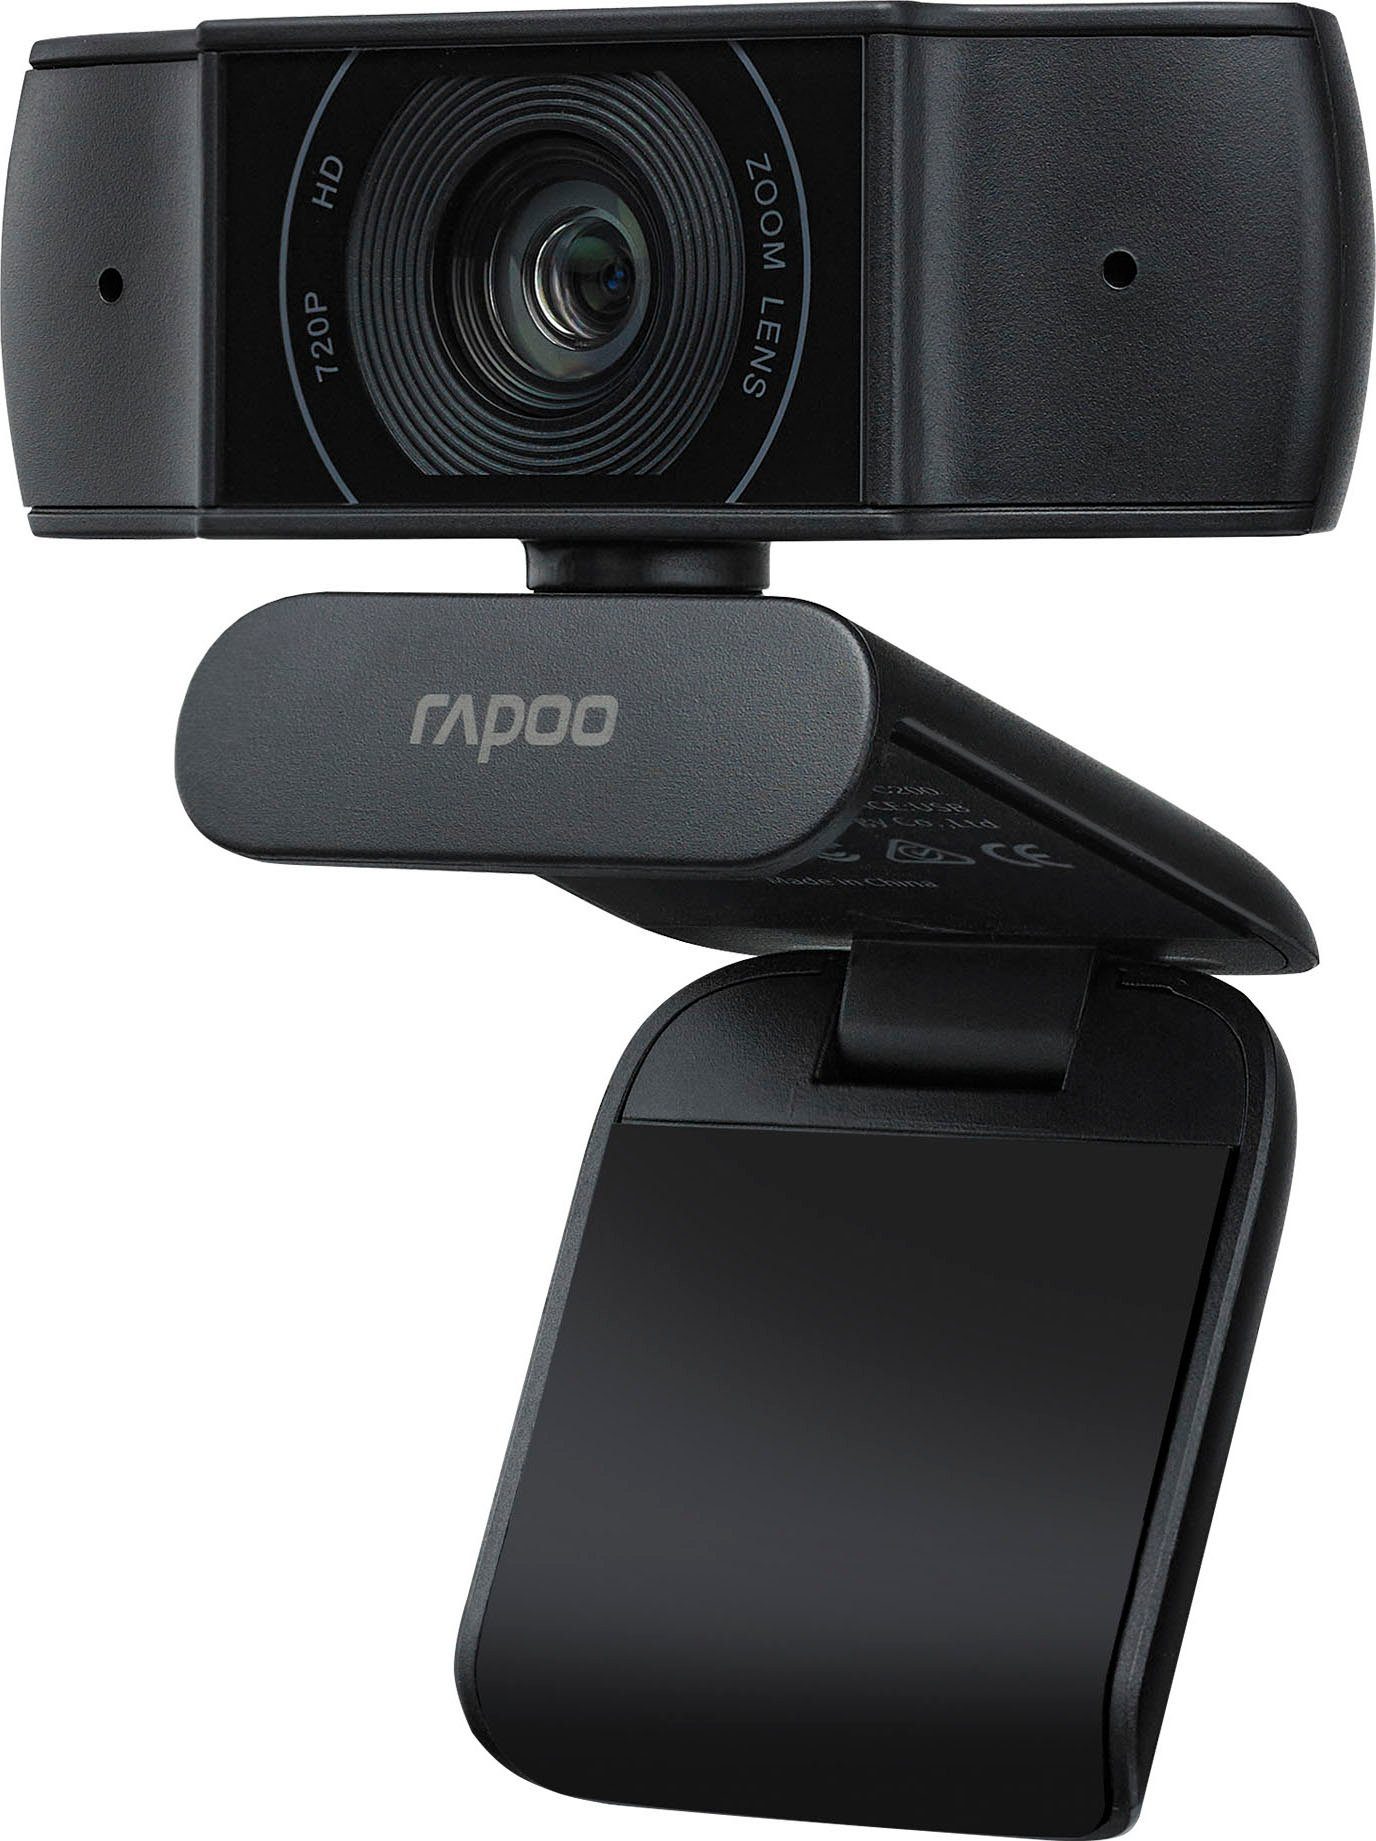 Rapoo XW170 HD Webcam 720p Webcam (HD)